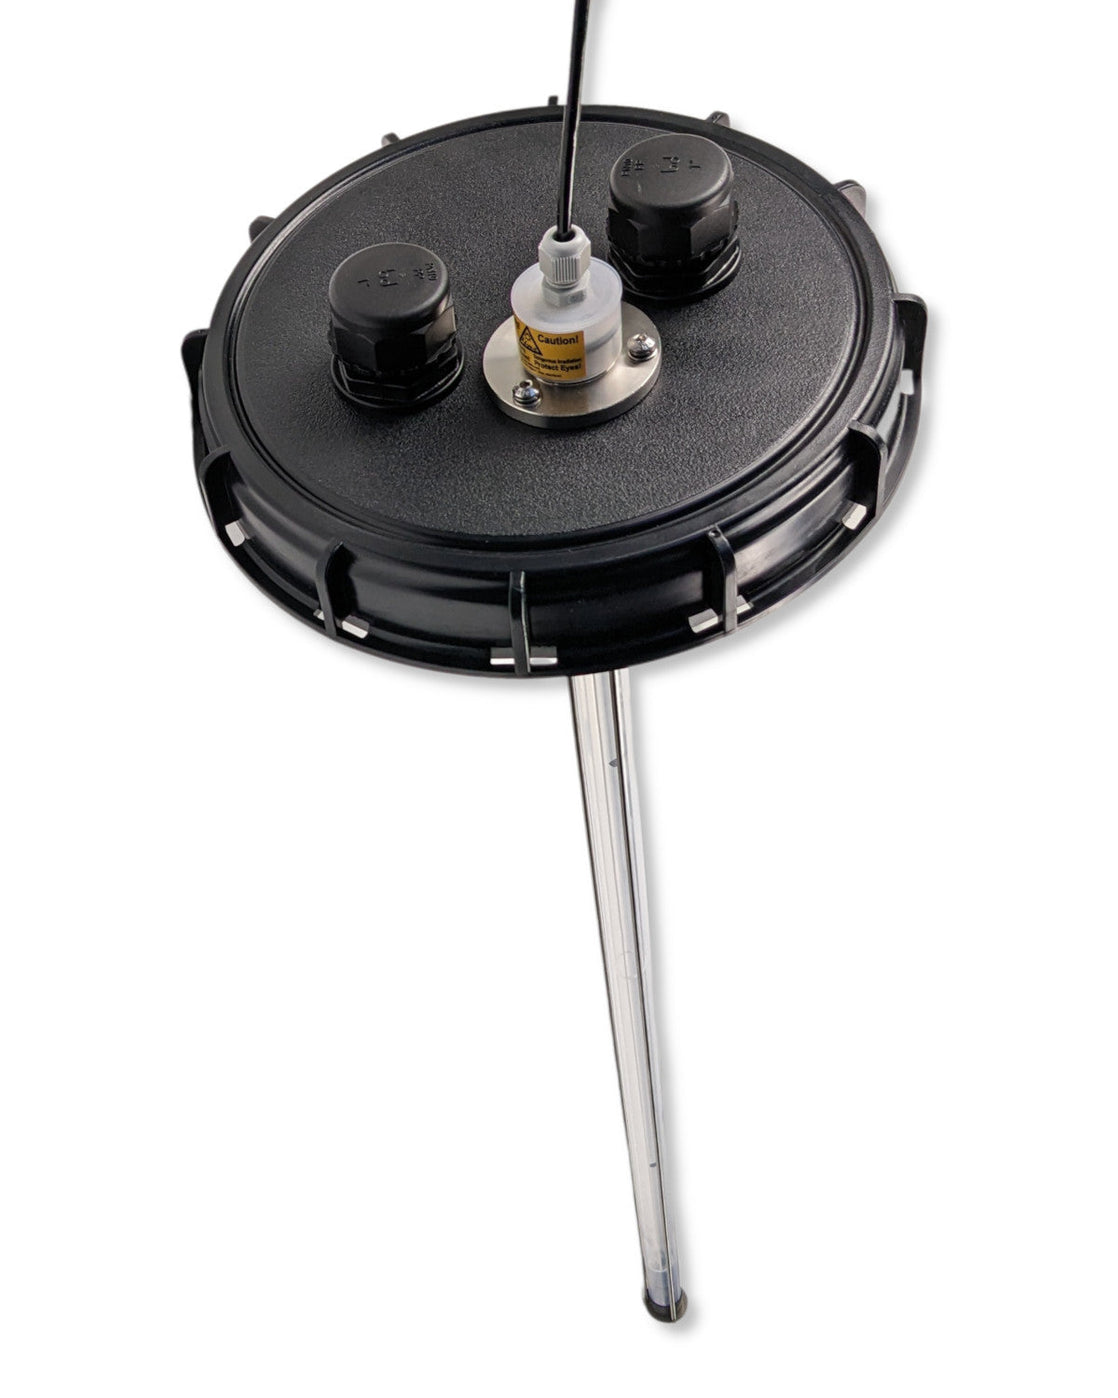 Eine schwarze Platte mit einer Metallstange darauf zur Wasserentnahme namens PURION IBC DN150 36W OTC SPL BS von UV Concept GmbH.